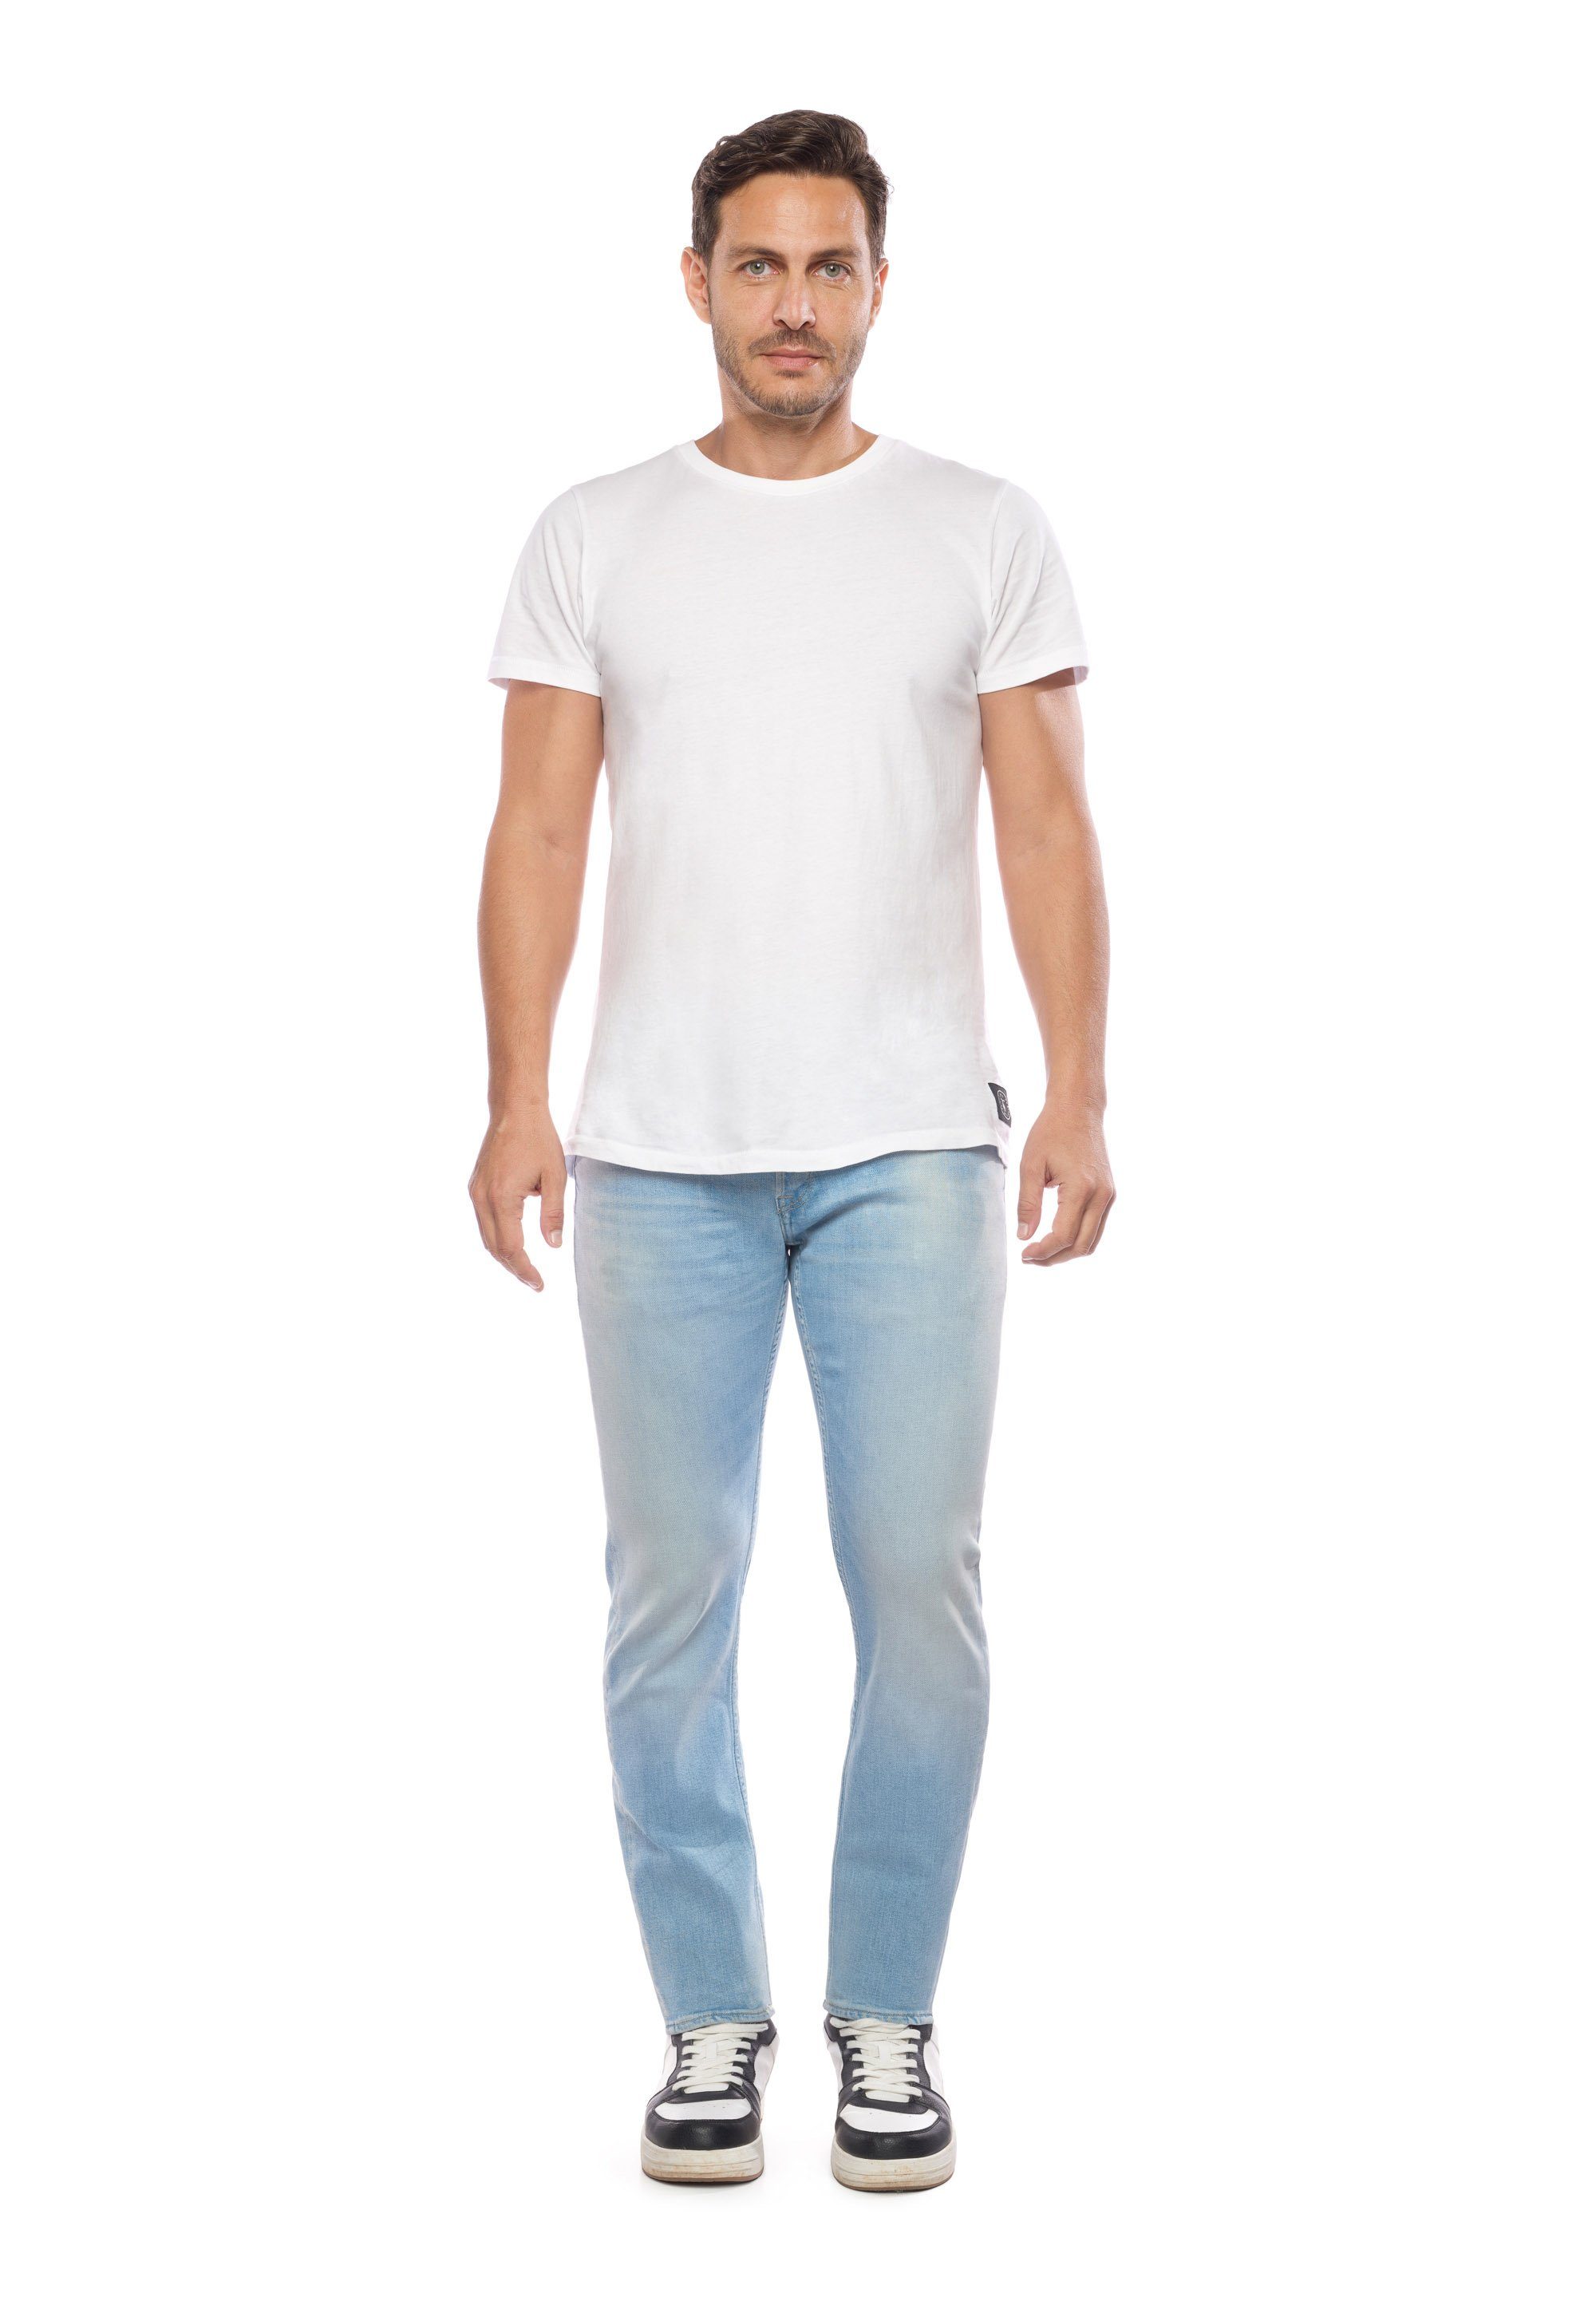 Le Temps Des Cerises 5-Pocket-Design Jeans im Bequeme klassischen